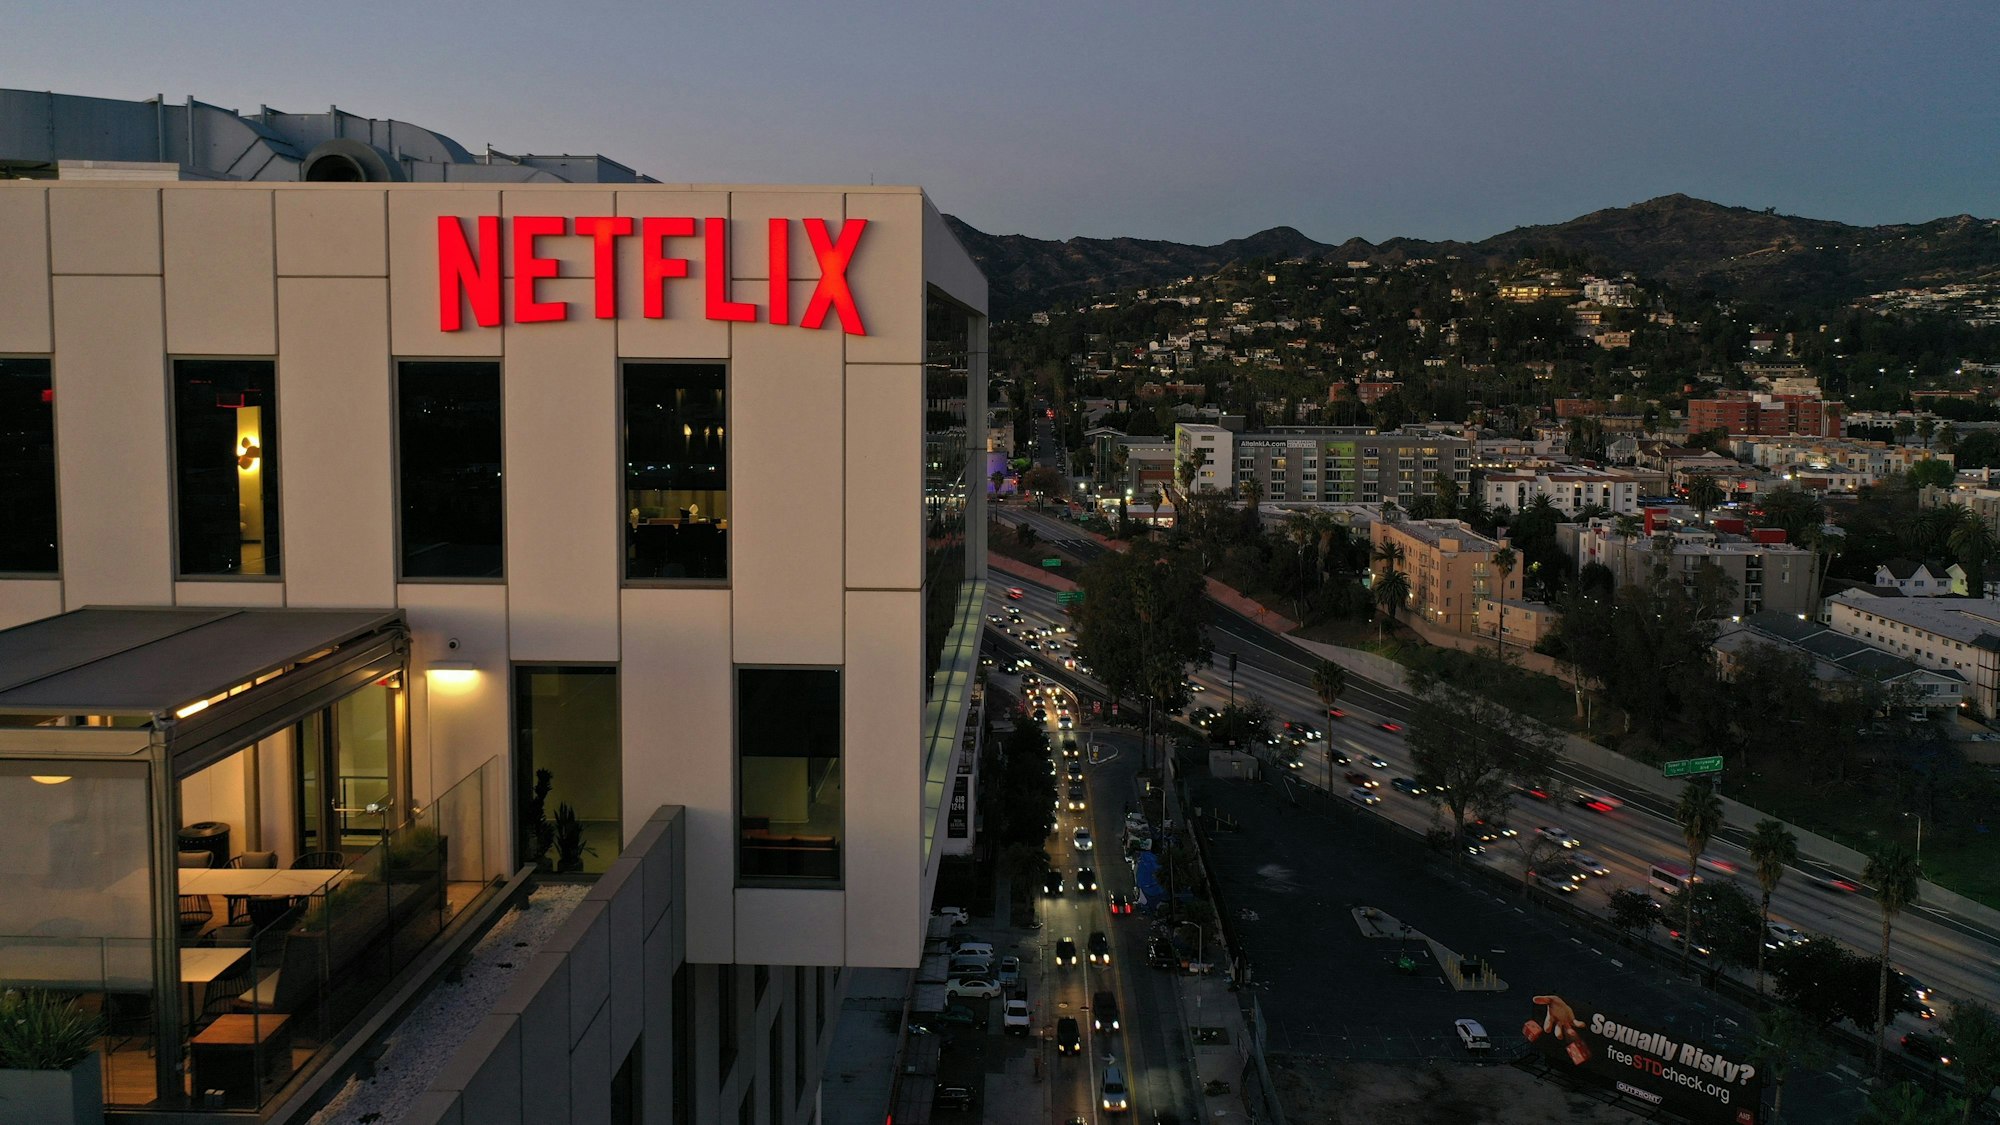 Ein Bürogebäude in Hollywood, auf der hellen Fassade prangt in roten Buchstaben „Netflix“.